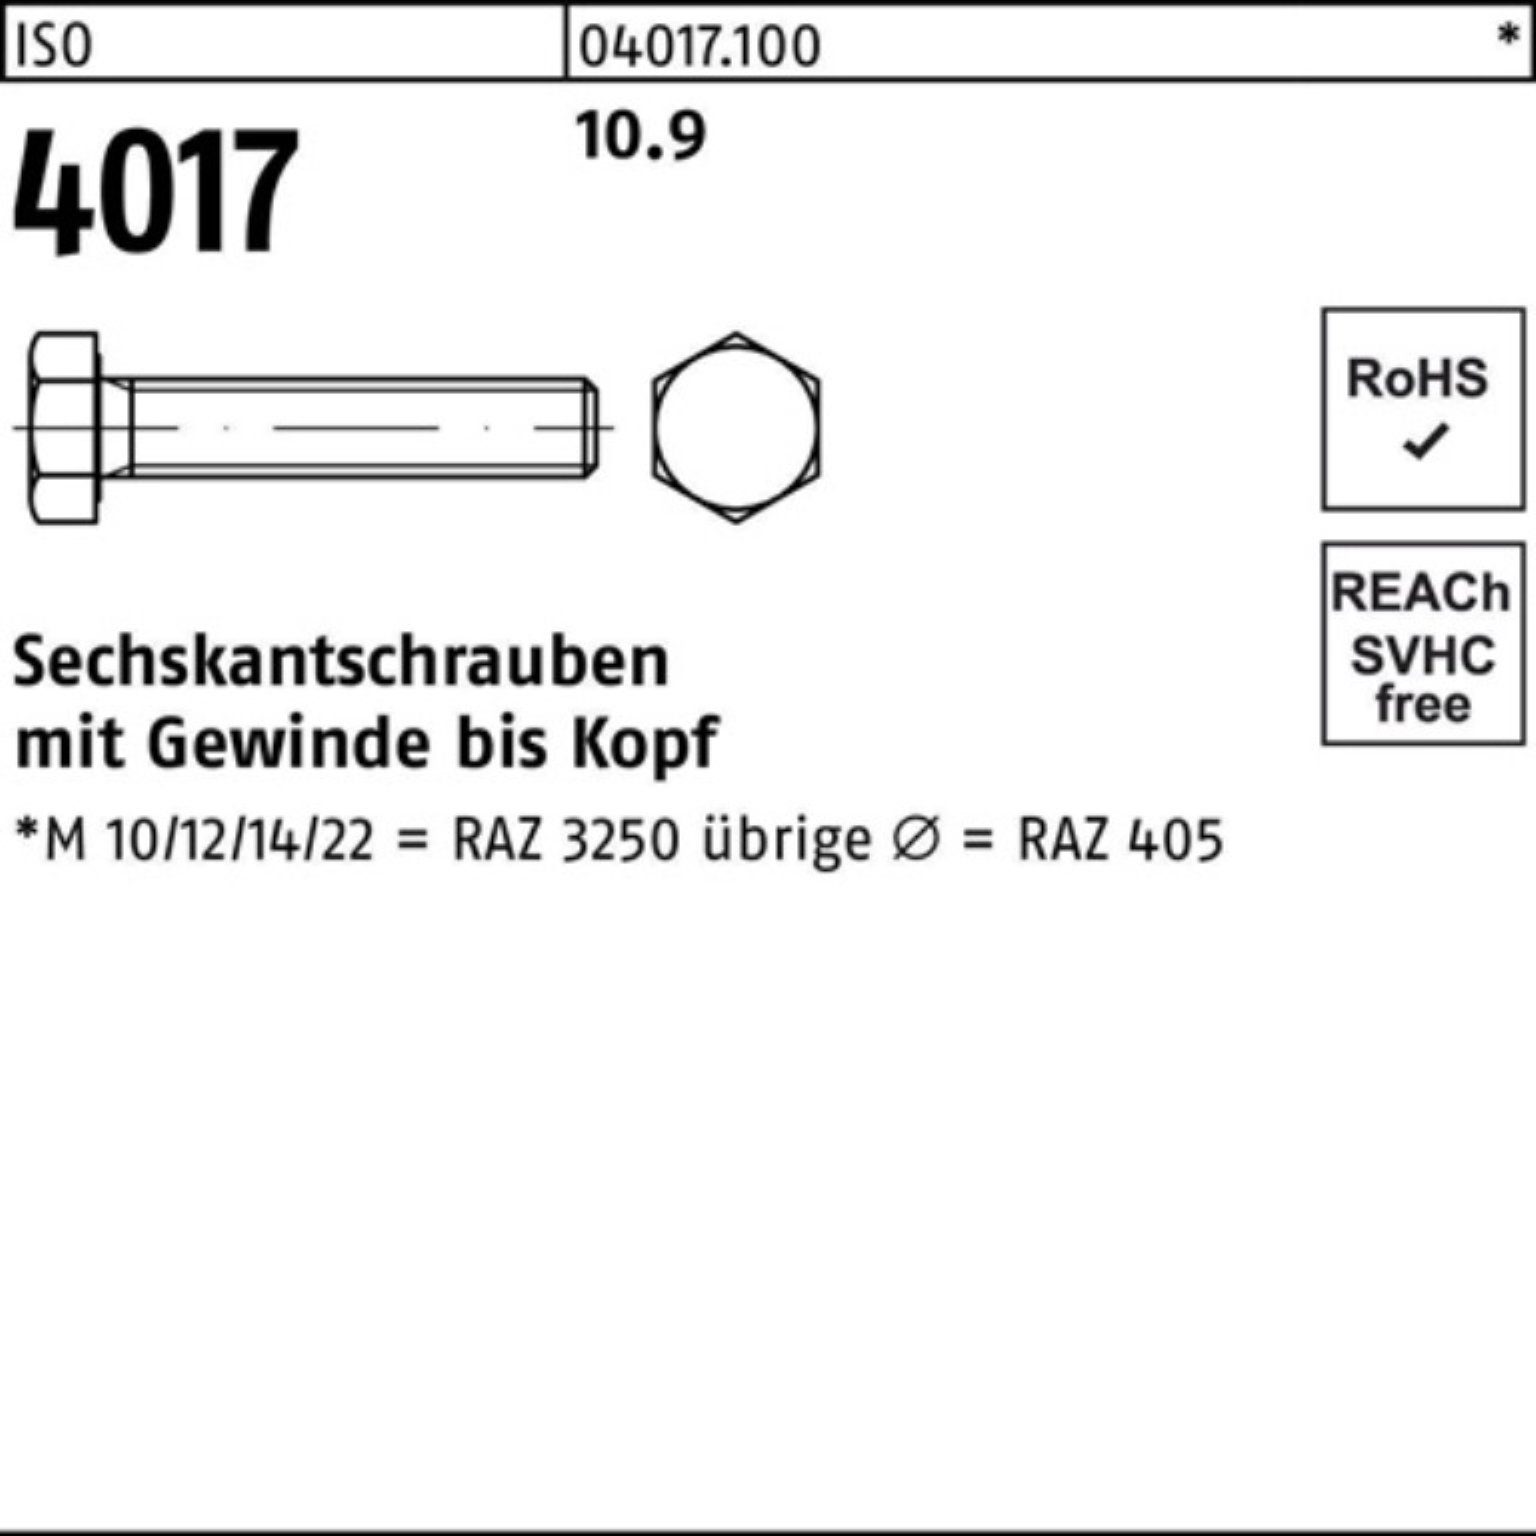 Bufab Sechskantschraube 100er Sechskantschraube 180 10.9 Pack M16x 4017 4 ISO 25 VG ISO Stück